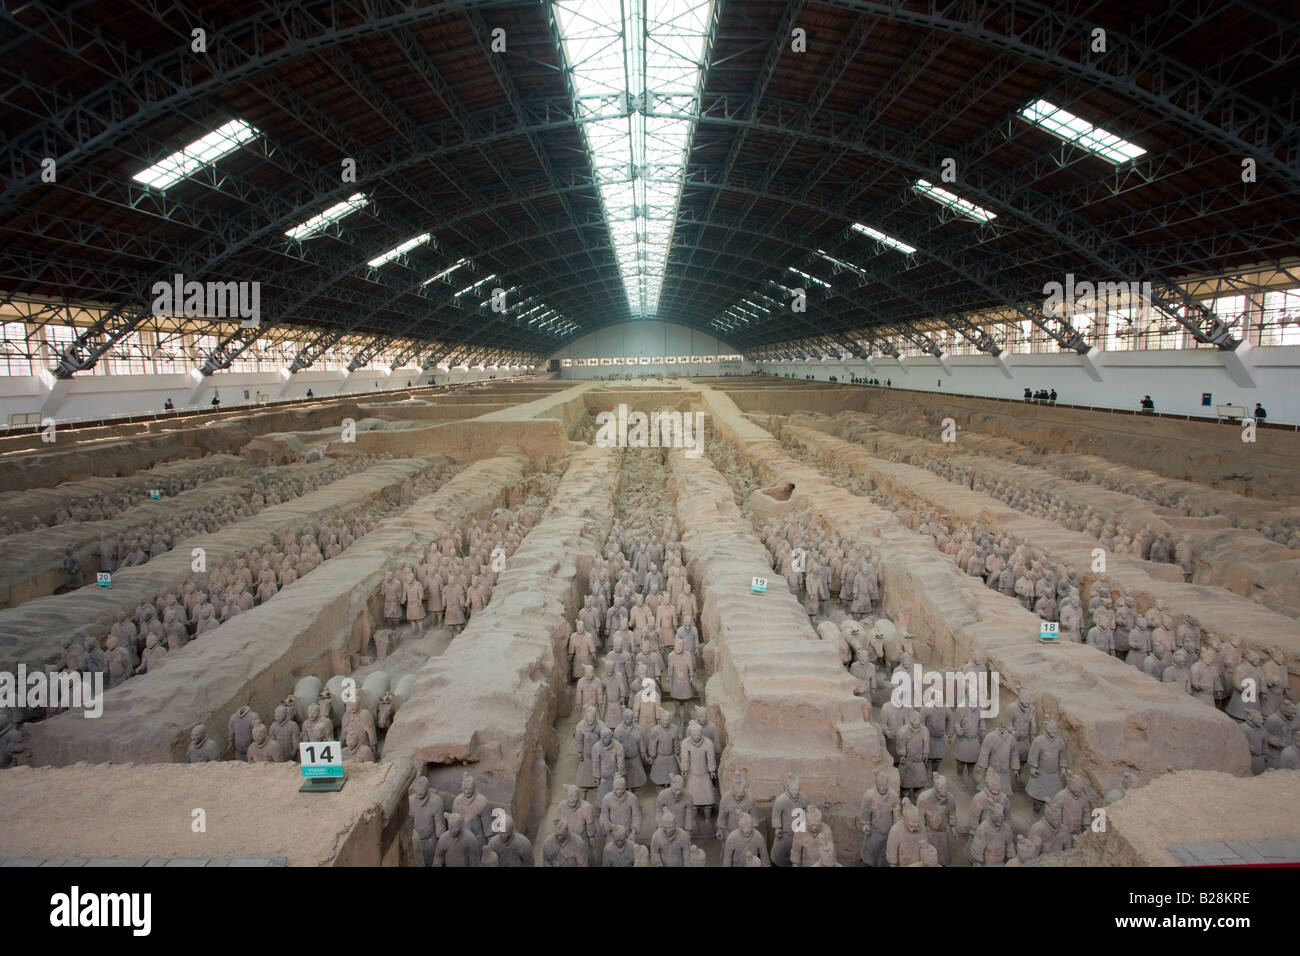 Les touristes voir les chiffres de l'infanterie à partir du bord de la fosse 1 au Musée Qin salles d'exposition de Terre Cuite Chine Banque D'Images